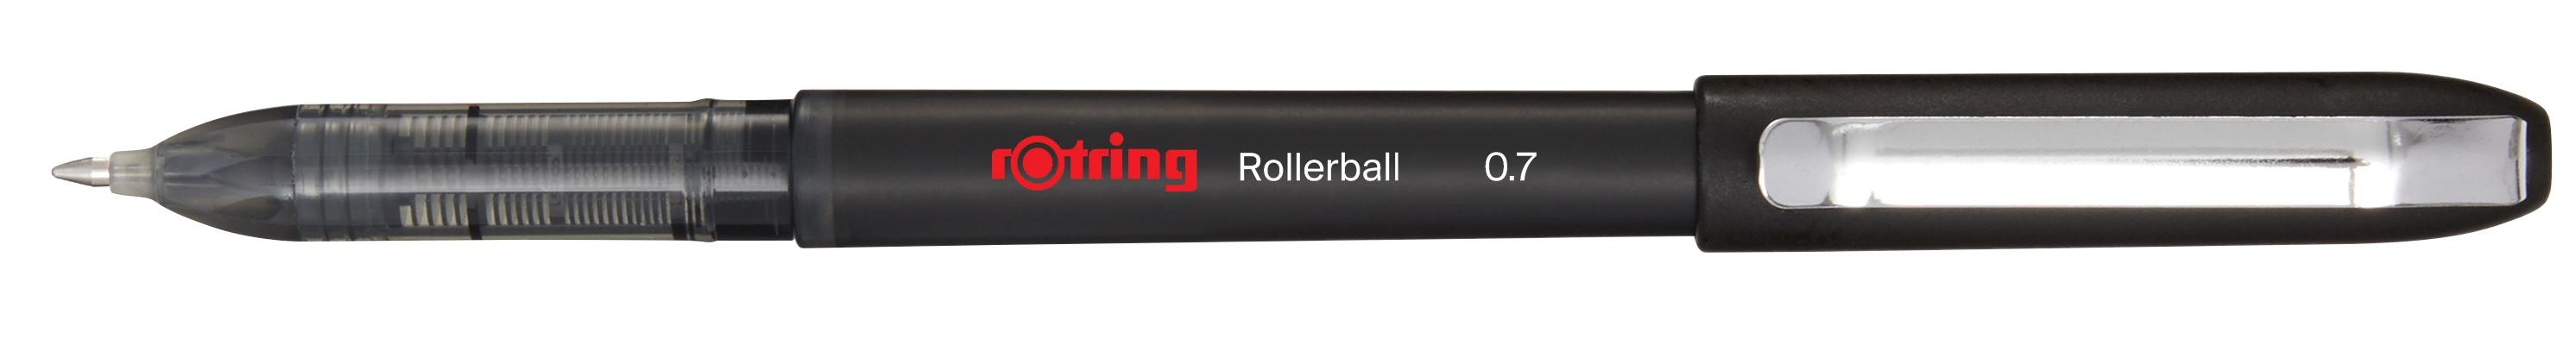 ROTRING Rollerball 0.7mm 2146104 noir